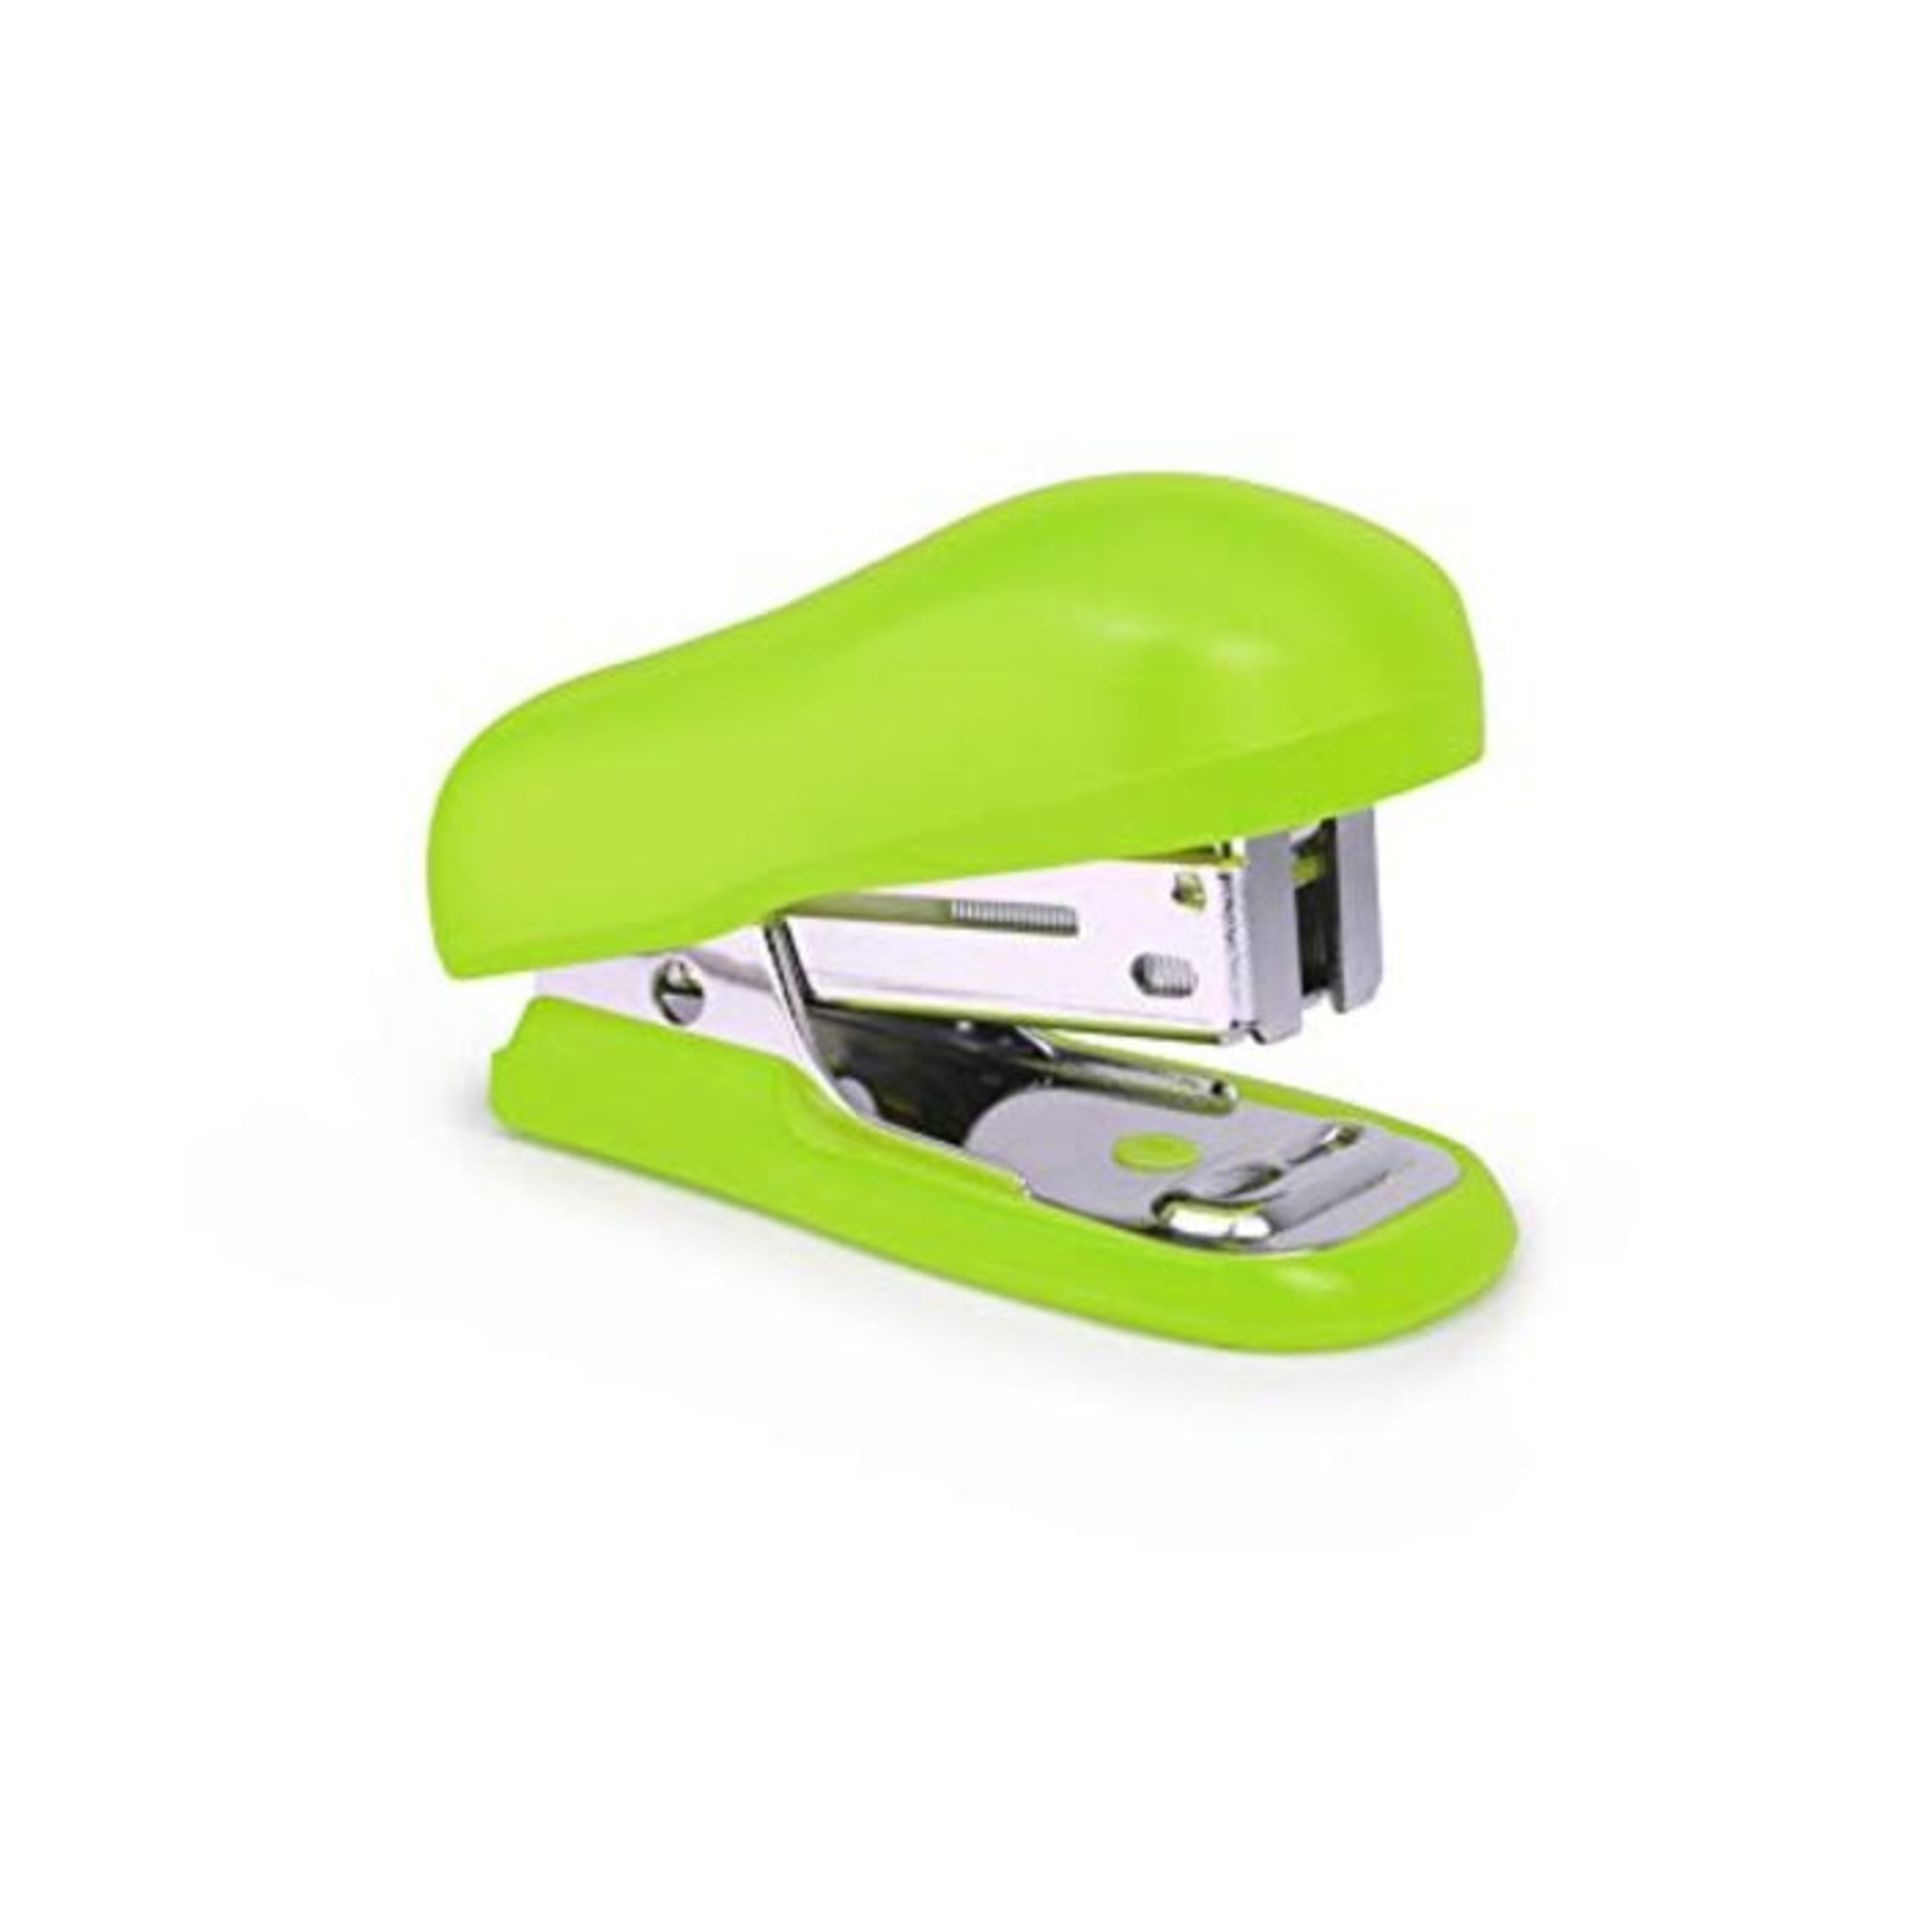 Rapesco 26/6 mm Bug Mini Stapler with 1000 Staples - Green